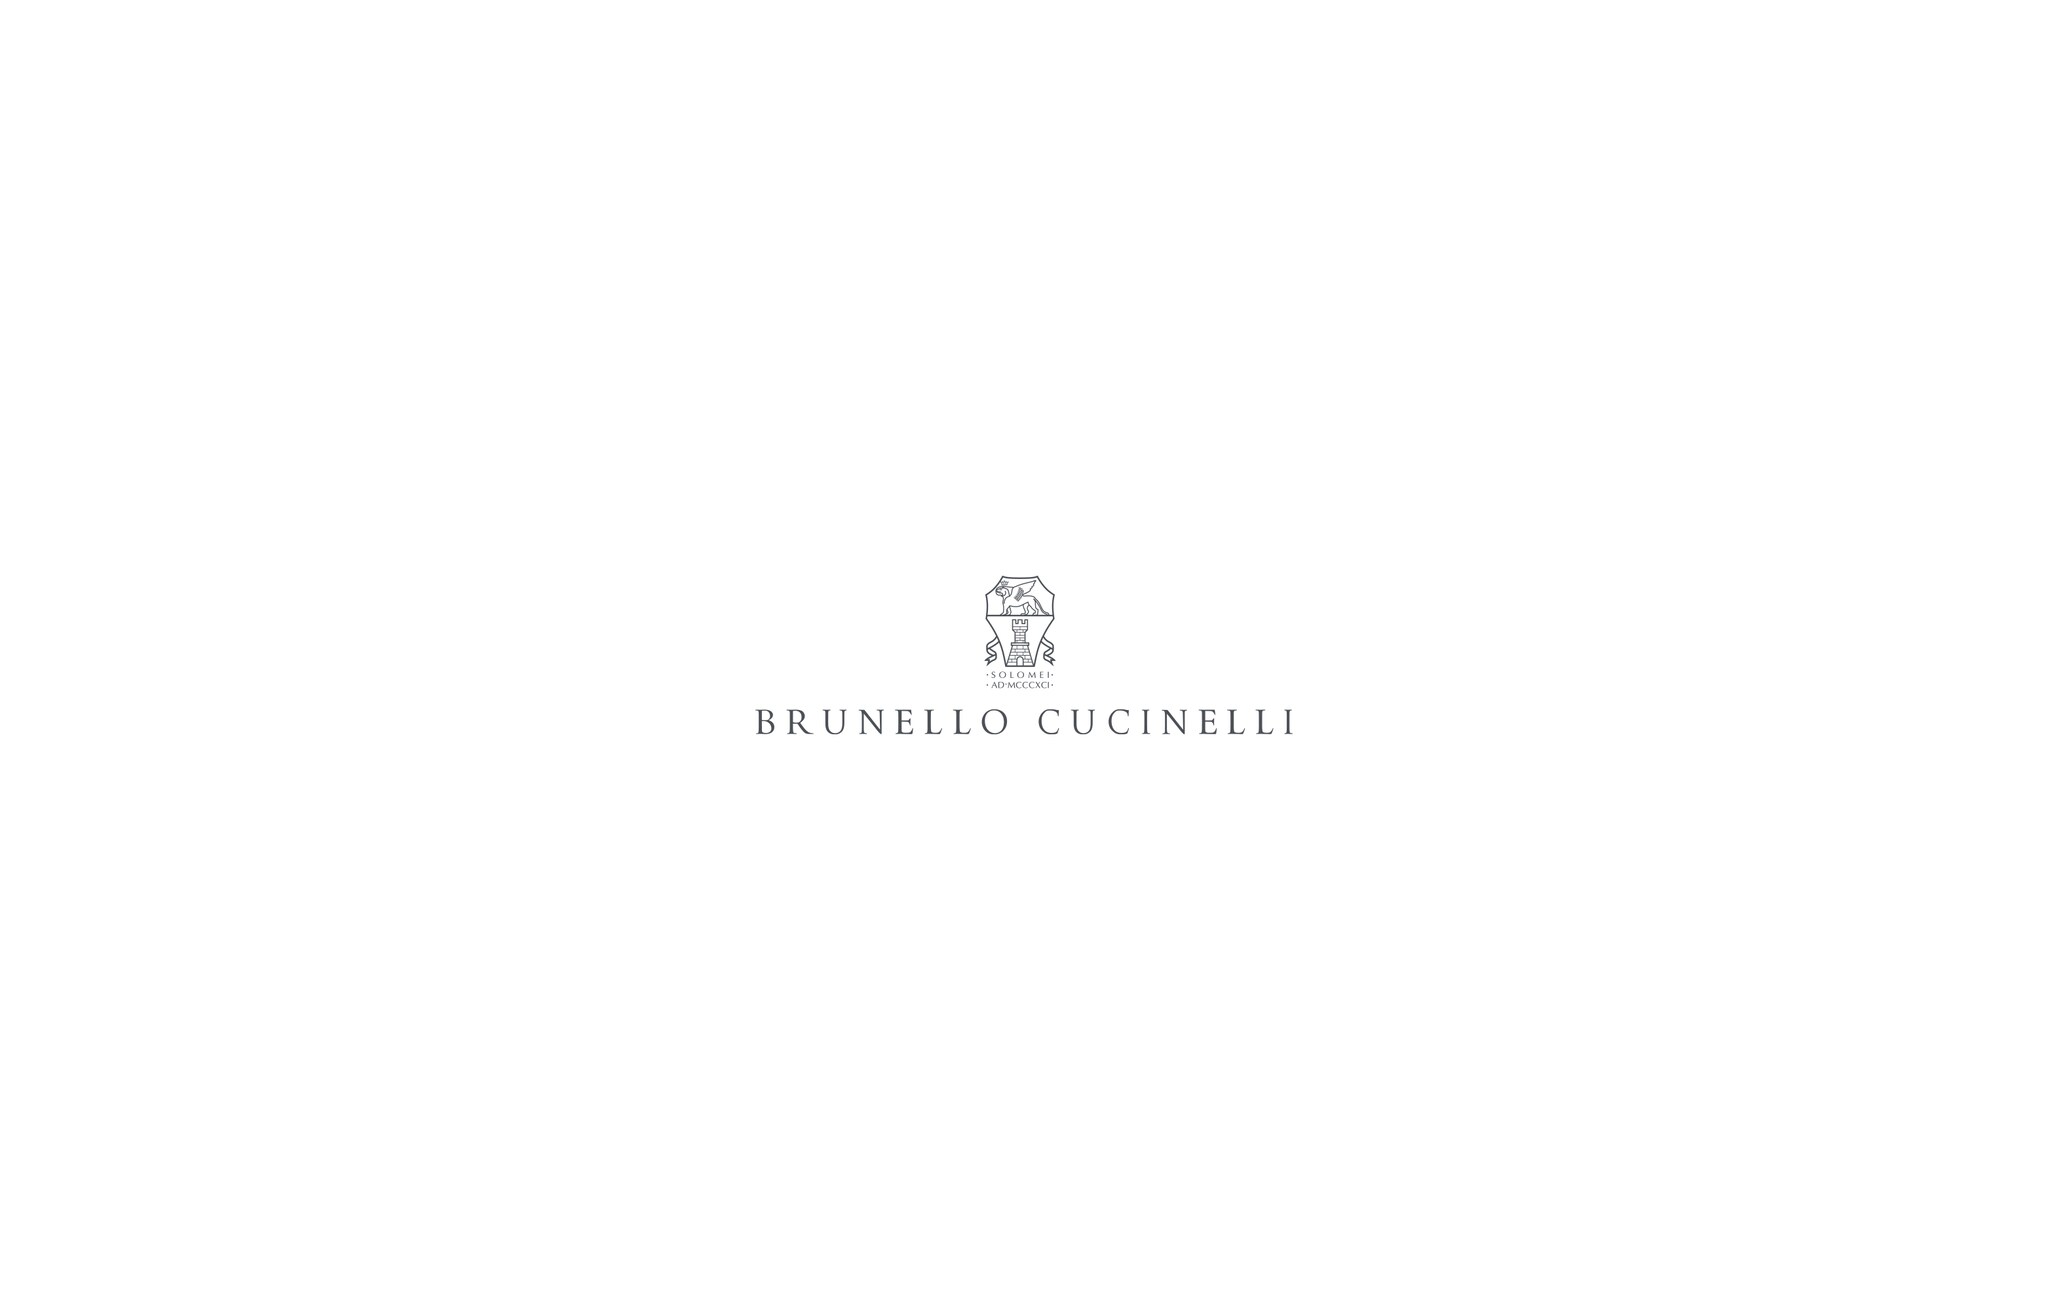  镶珠装饰的衬衫 燕麦色 女童 - Brunello Cucinelli 